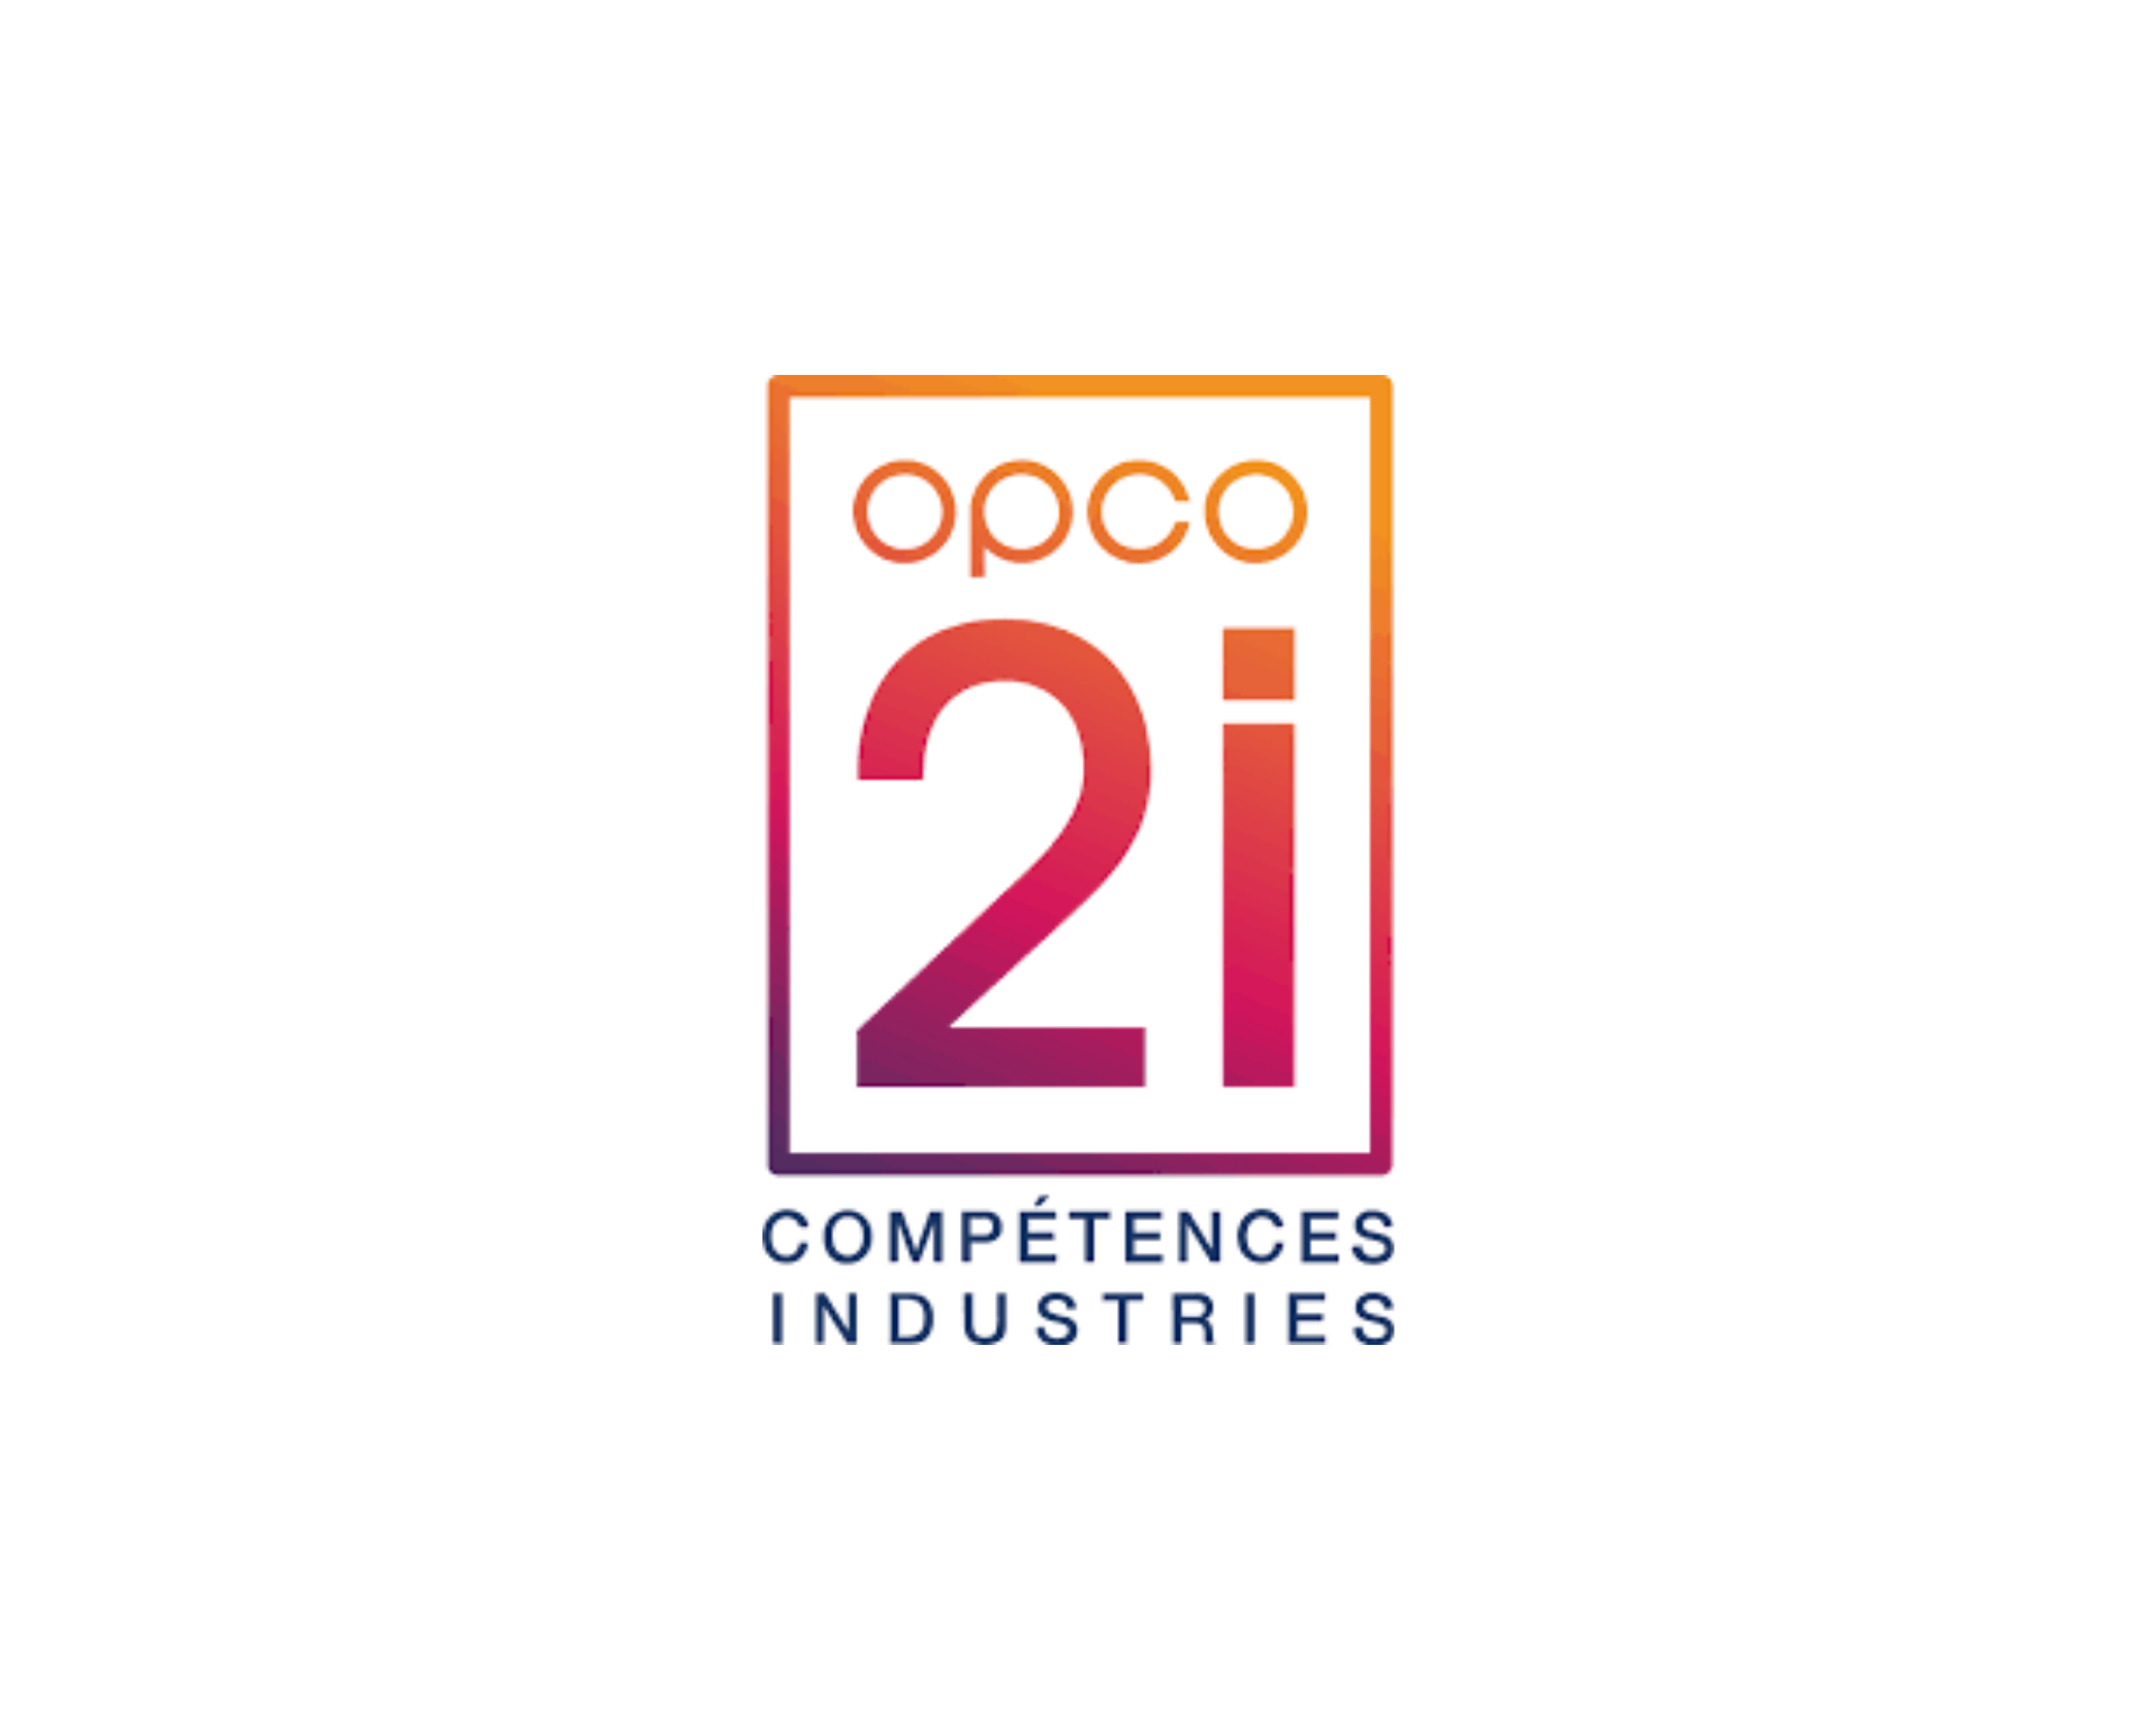 OPCO 2I - interindustriel